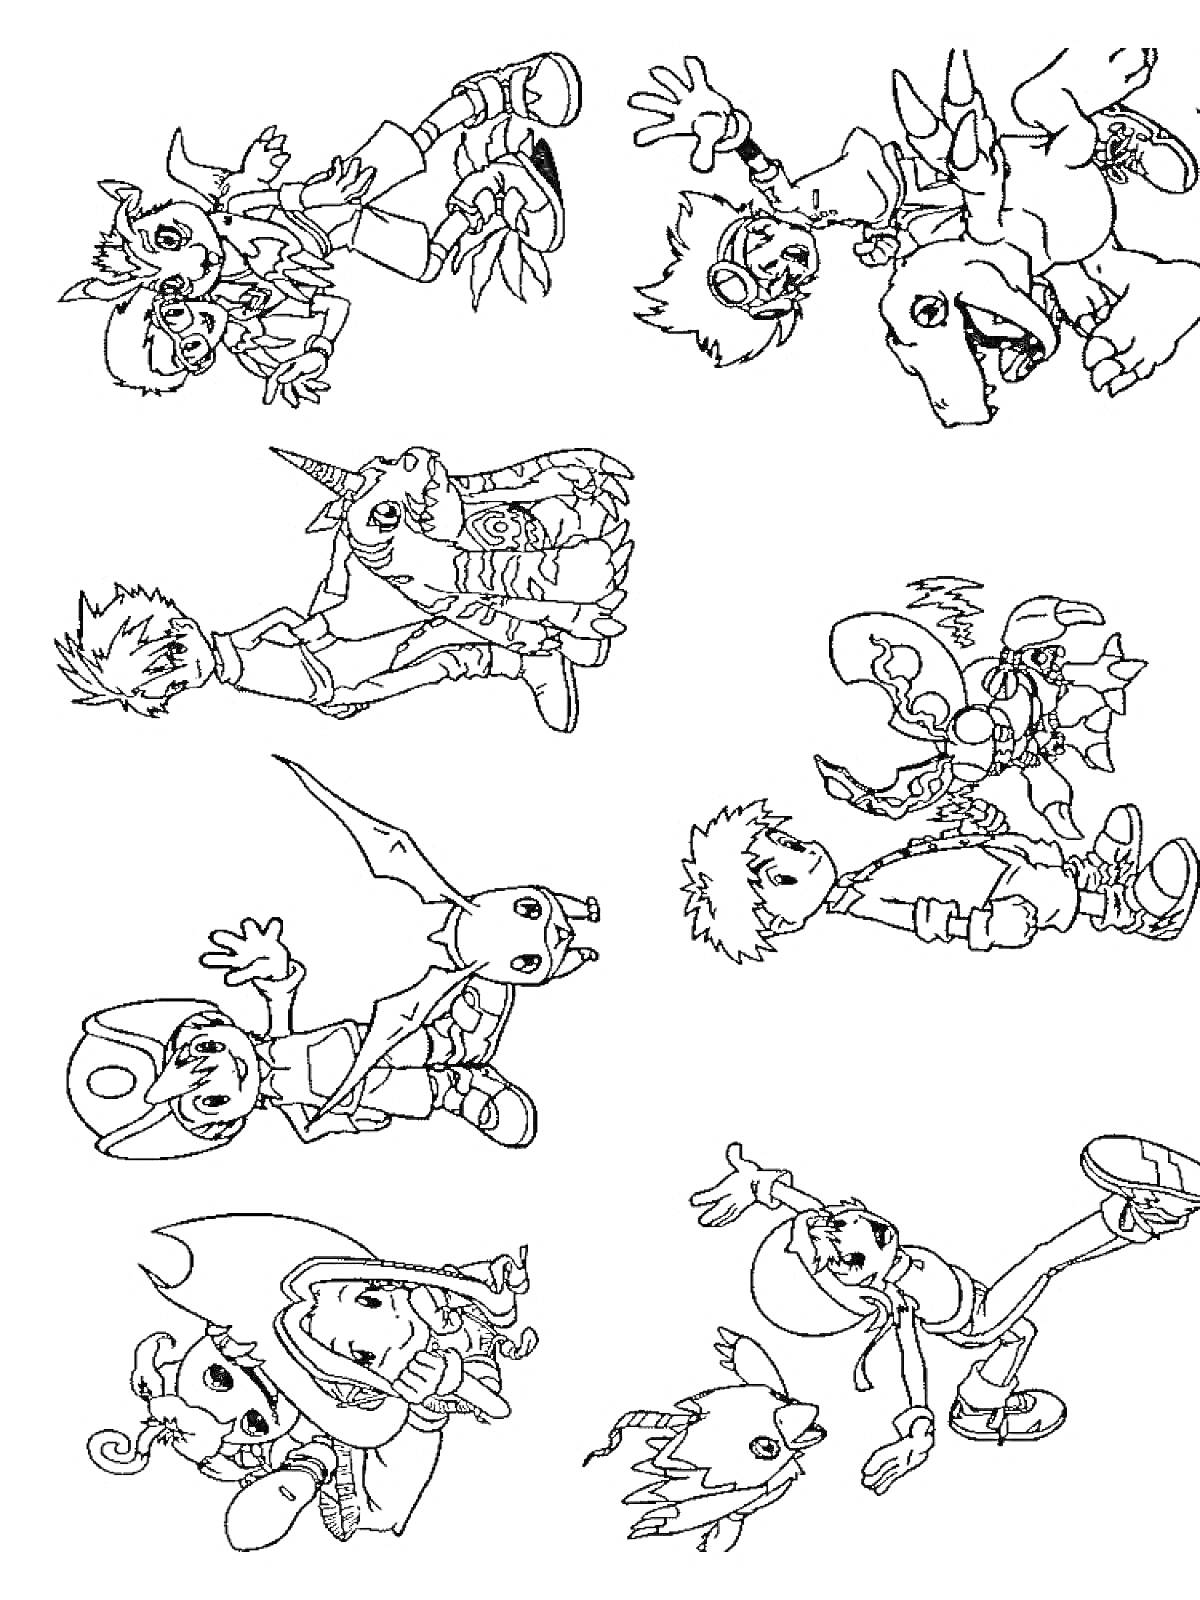 Раскраска Дигимон и партнеры, изображены восемь пар героев (люди и их дигимоны)